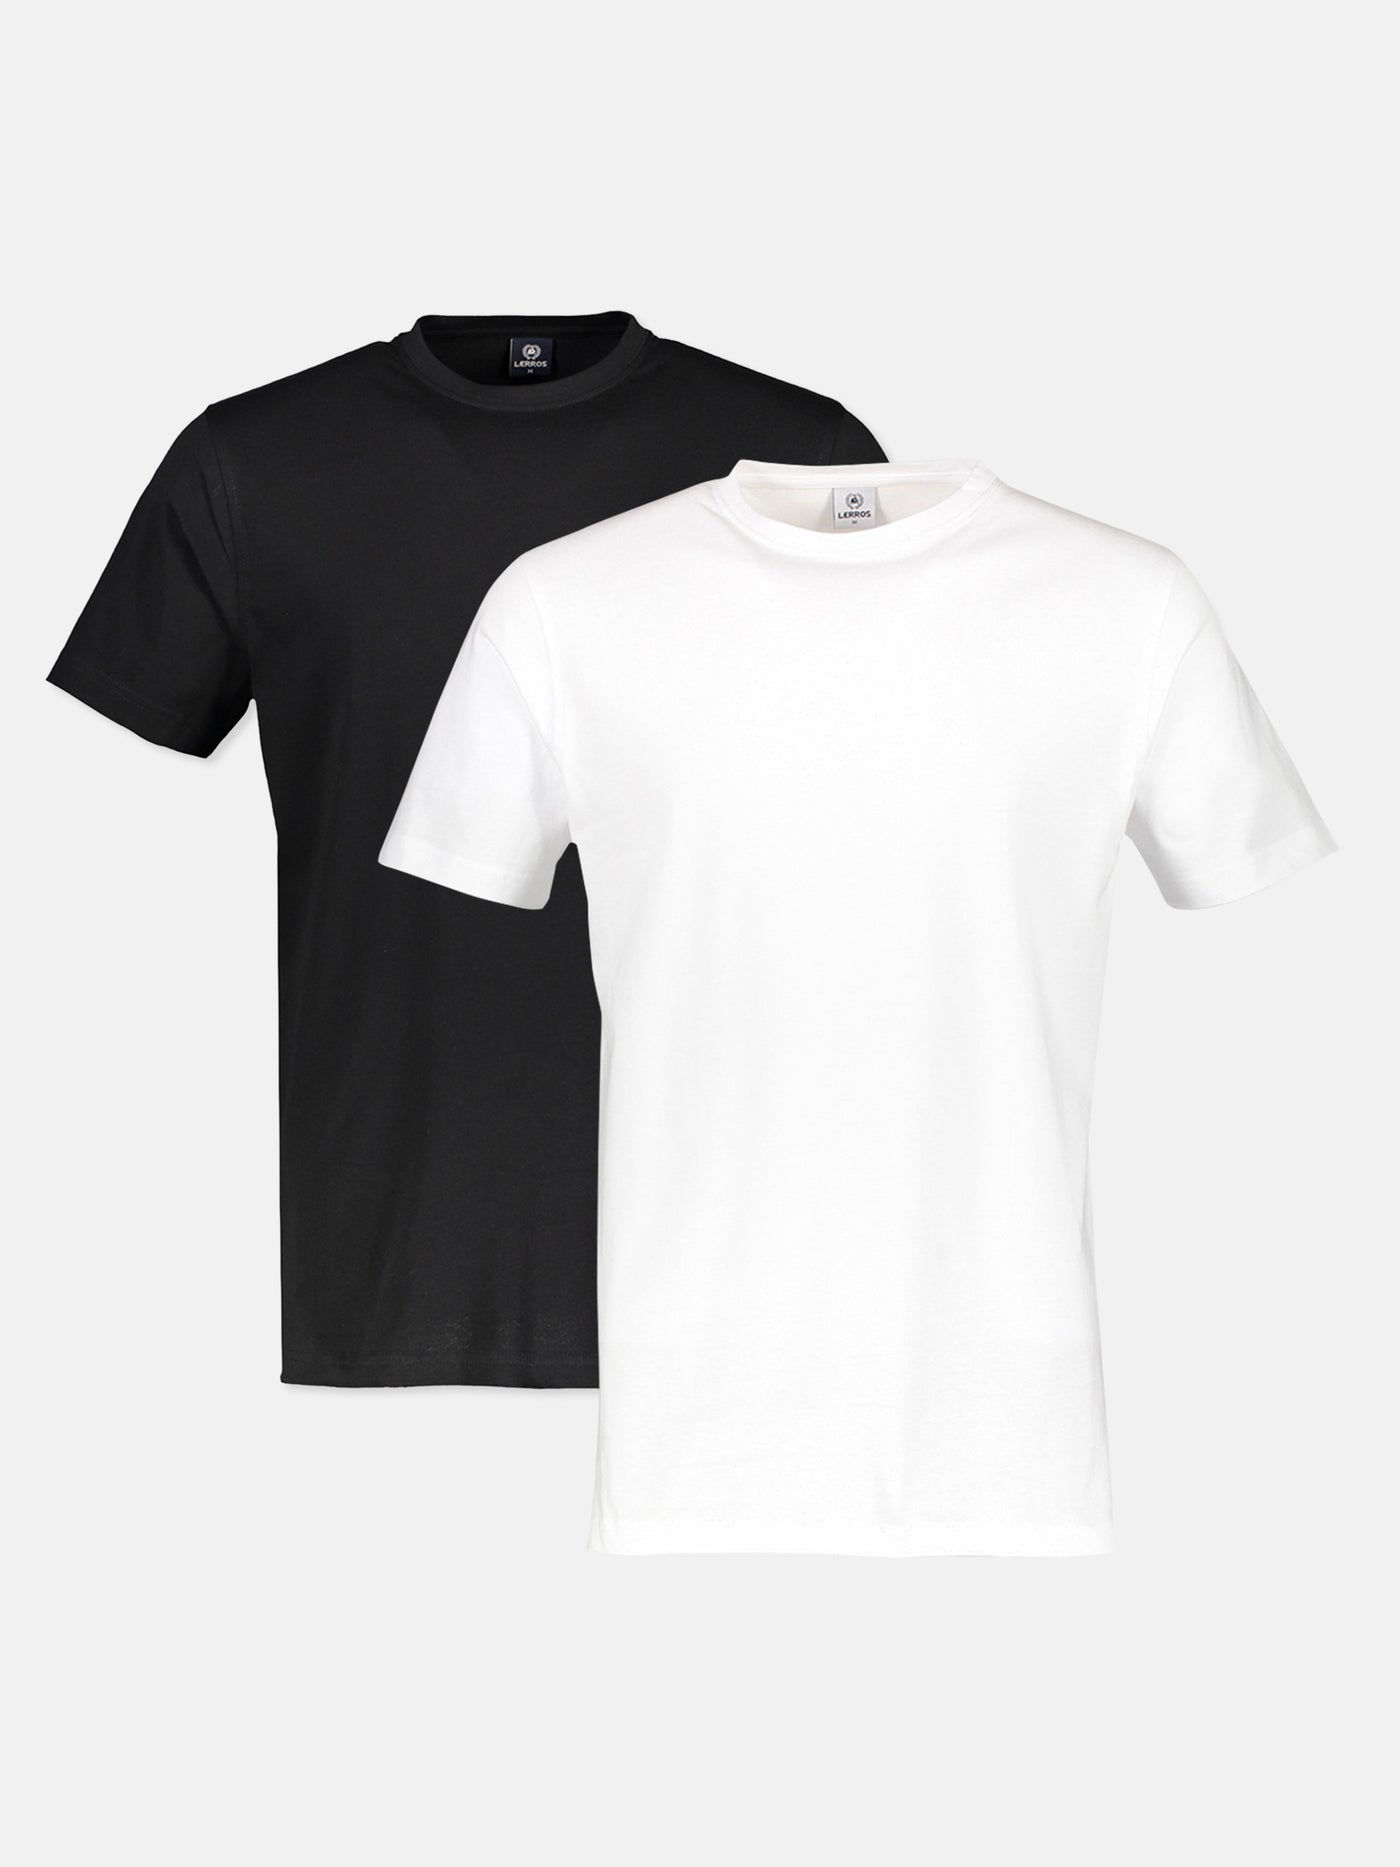 Doppelpack T-Shirt für Herren, Rundhals in Premium Baumwollqualität